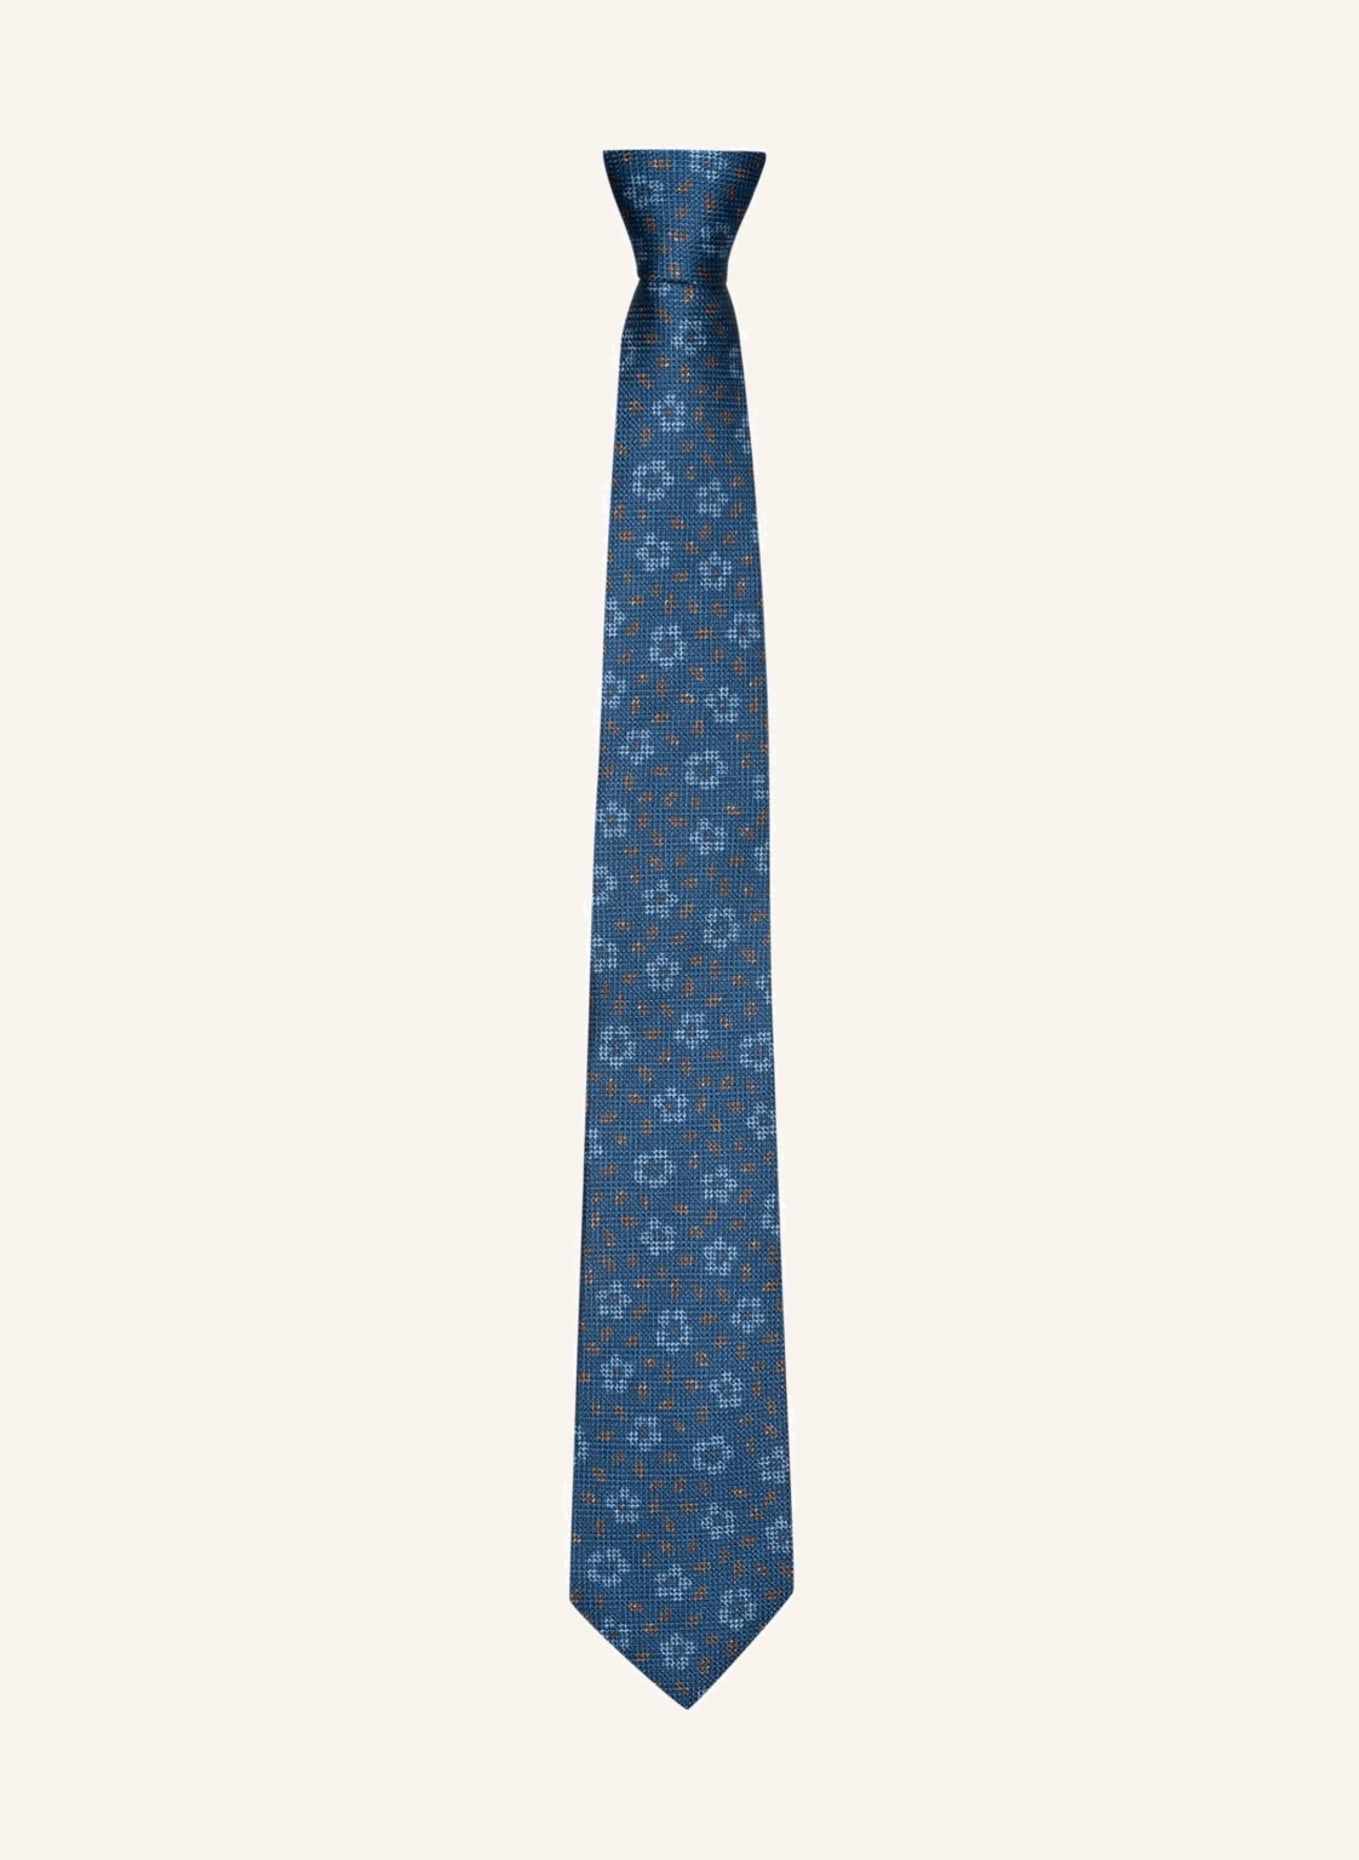 in OLYMP Krawatte blau/ SIGNATURE beige hellblau/